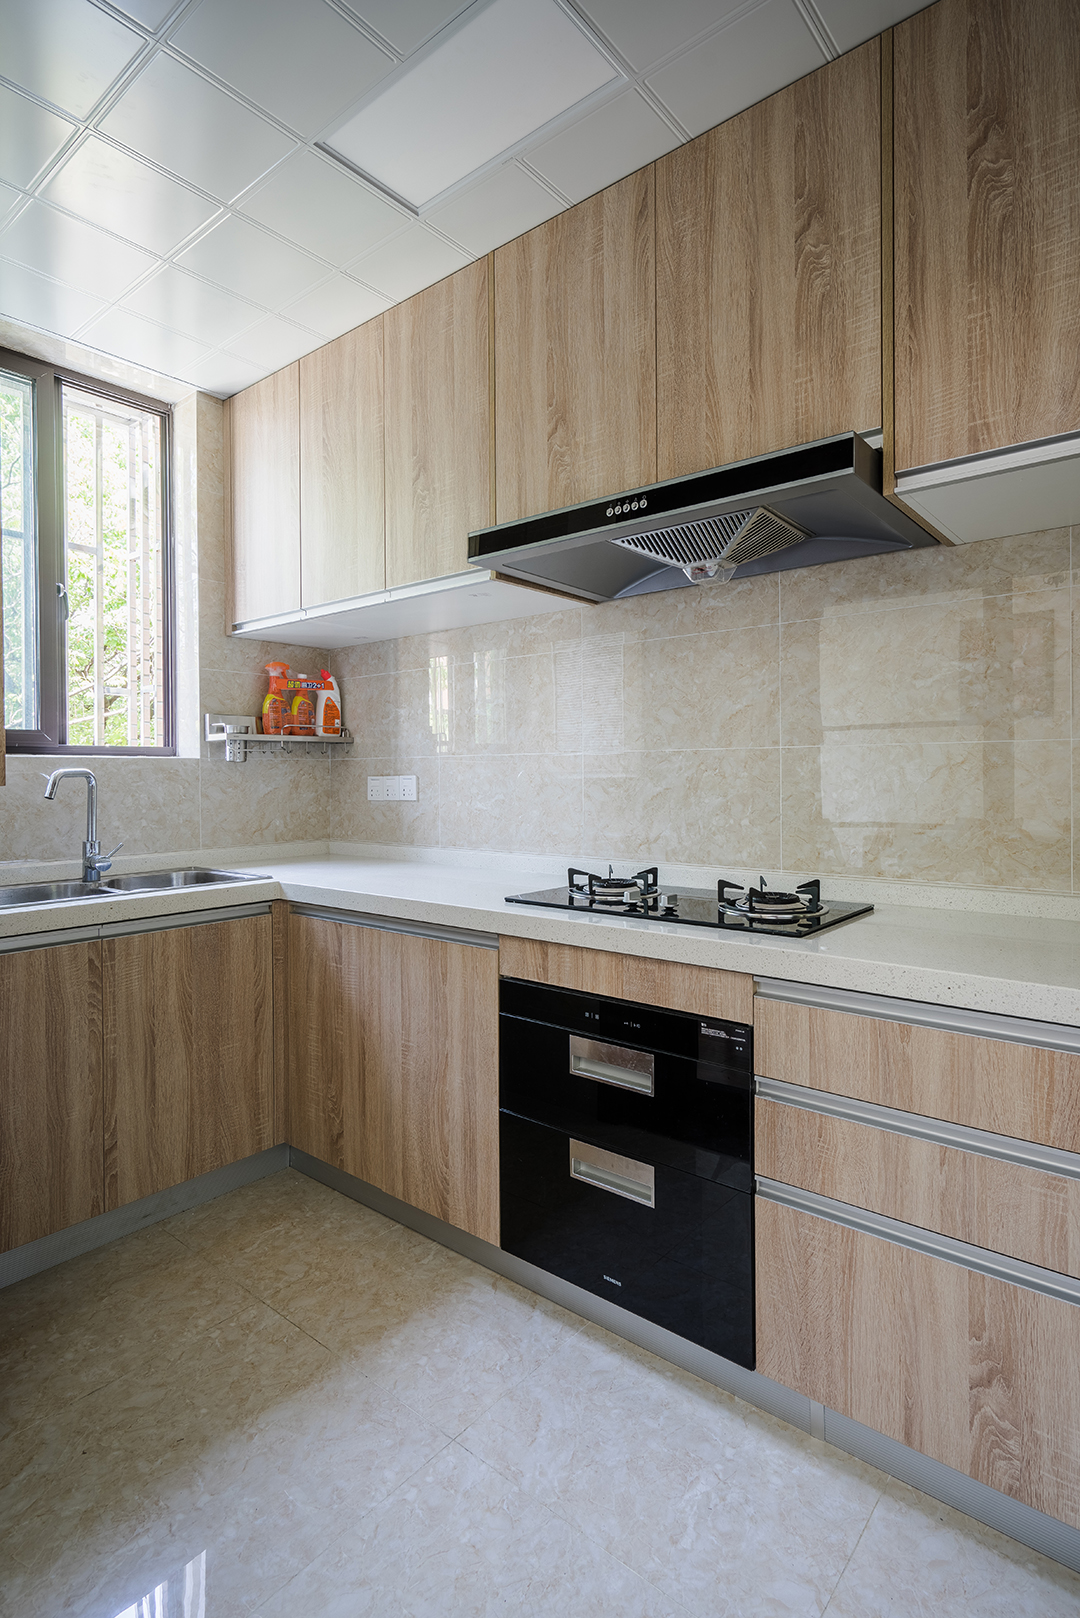 厨房厨房设计是指将橱柜、厨具和各种厨用家电按其形状、尺寸及使用要求进行合理布局，巧妙搭配，实现厨房用具一体化。线条简单，厨房油烟大，好打理。台面采用石英石台面，耐磨耐造，不渗色。整个空间融为一体。
